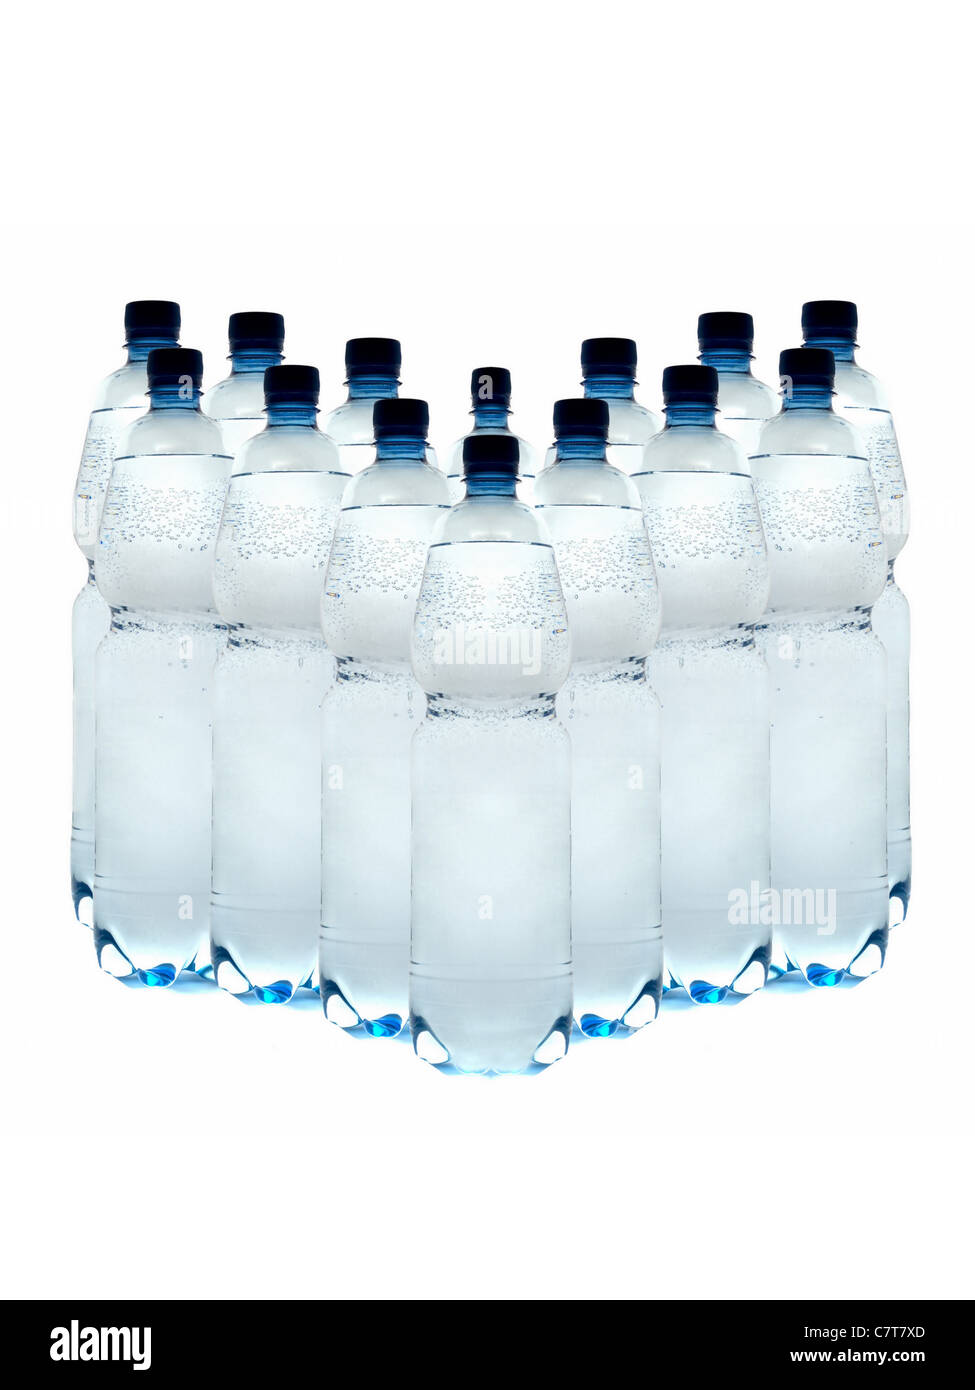 Las botellas de plástico de agua mineral, dispuestas en fila sobre un fondo blanco. Foto de stock